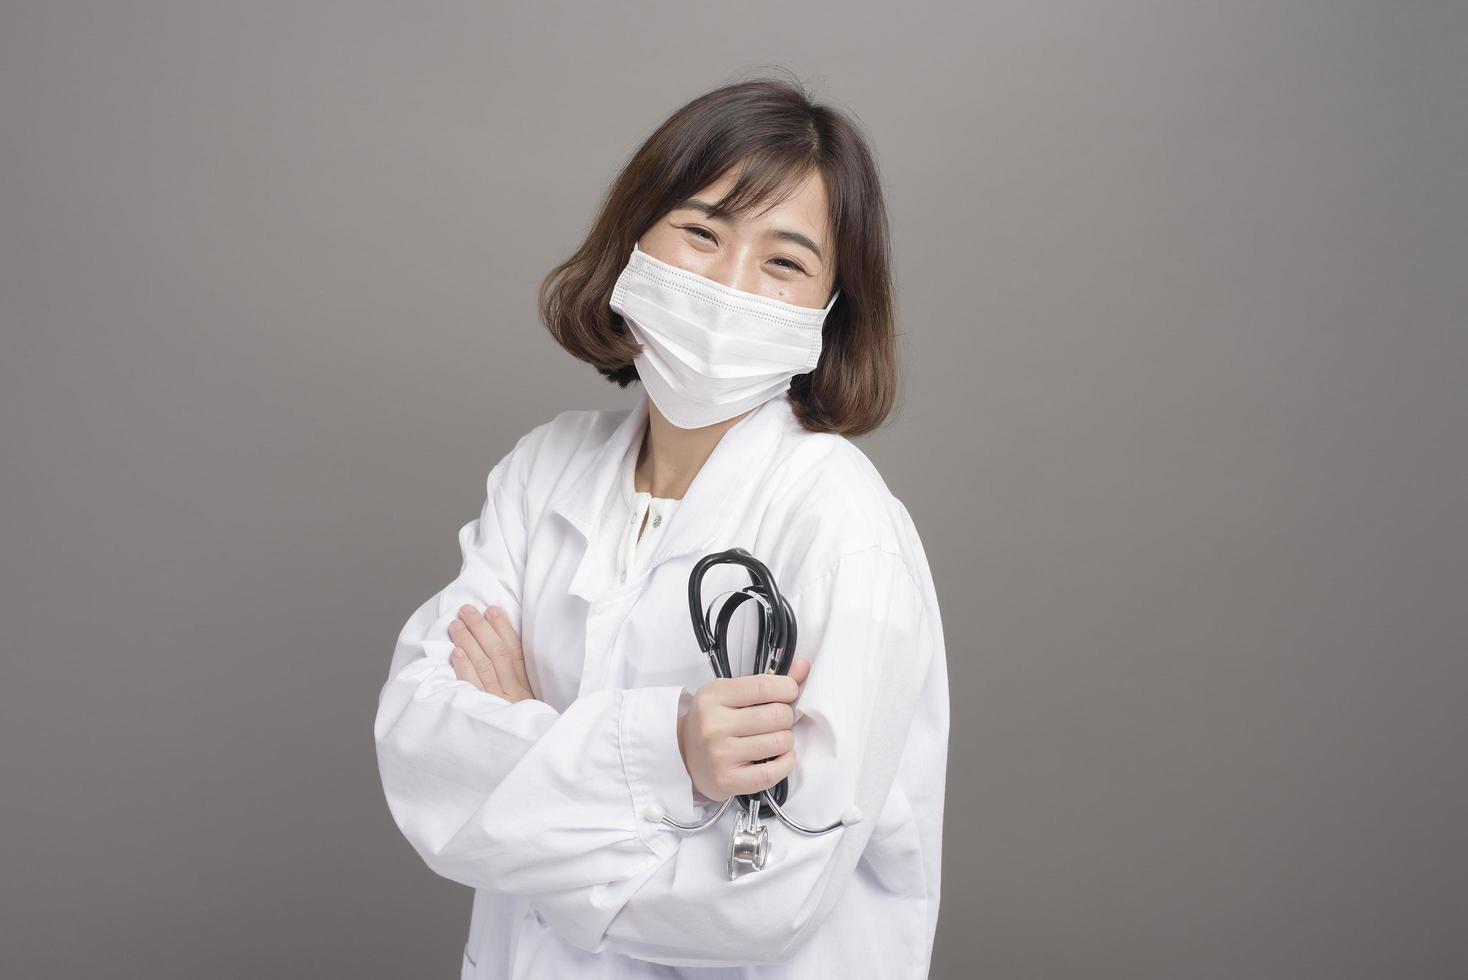 junge selbstbewusste Ärztin trägt chirurgische Maske über grauem Hintergrundstudio foto